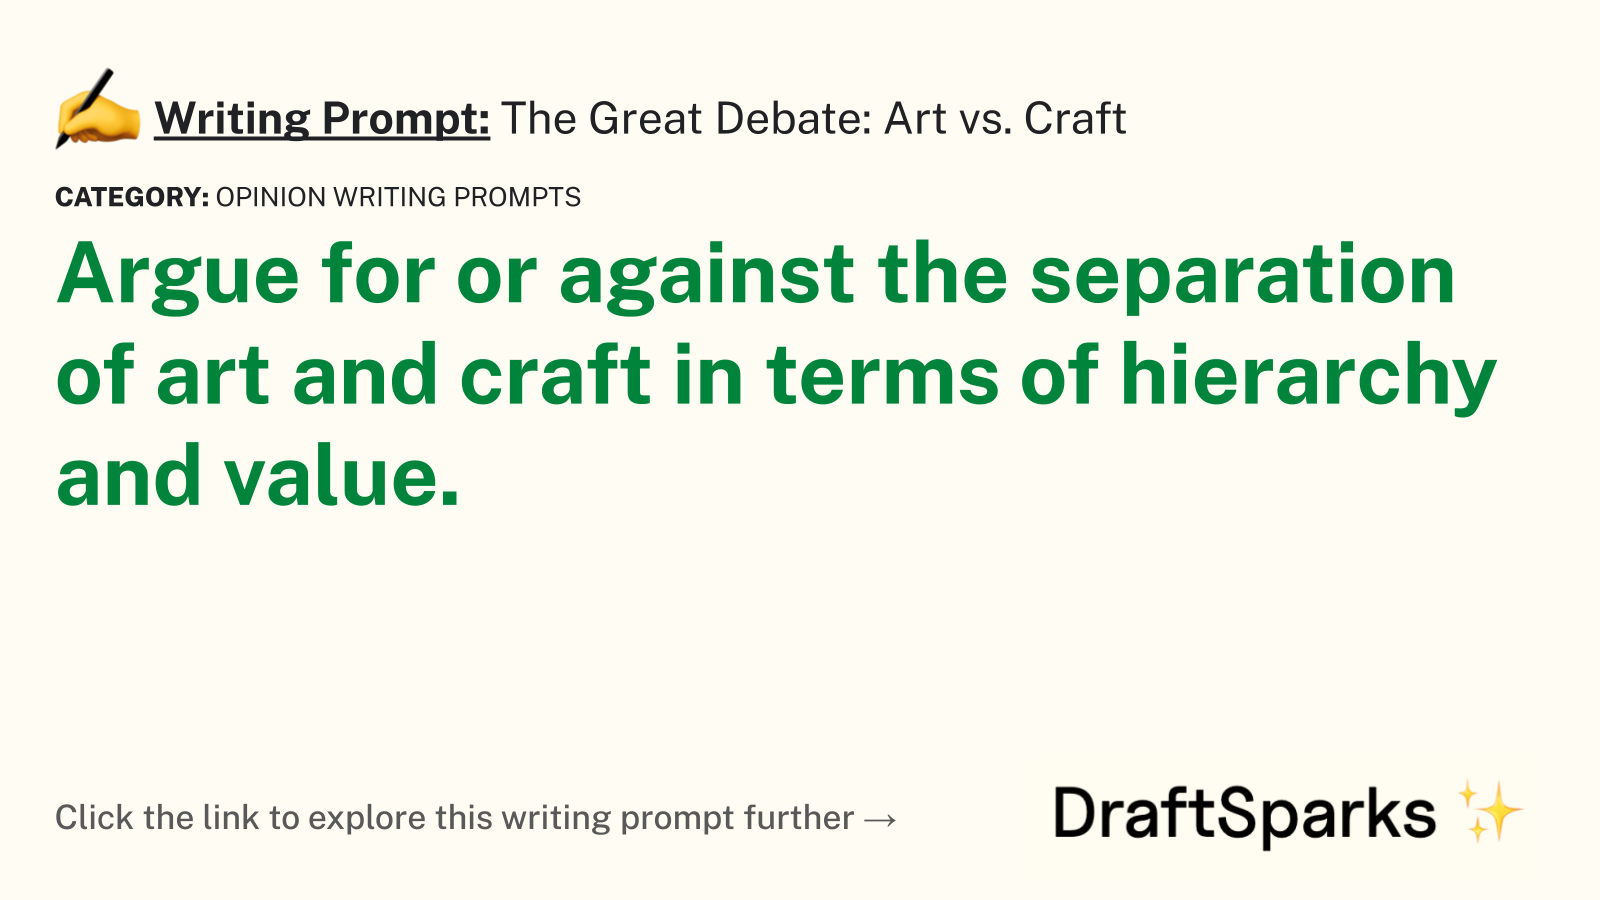 The Great Debate: Art vs. Craft